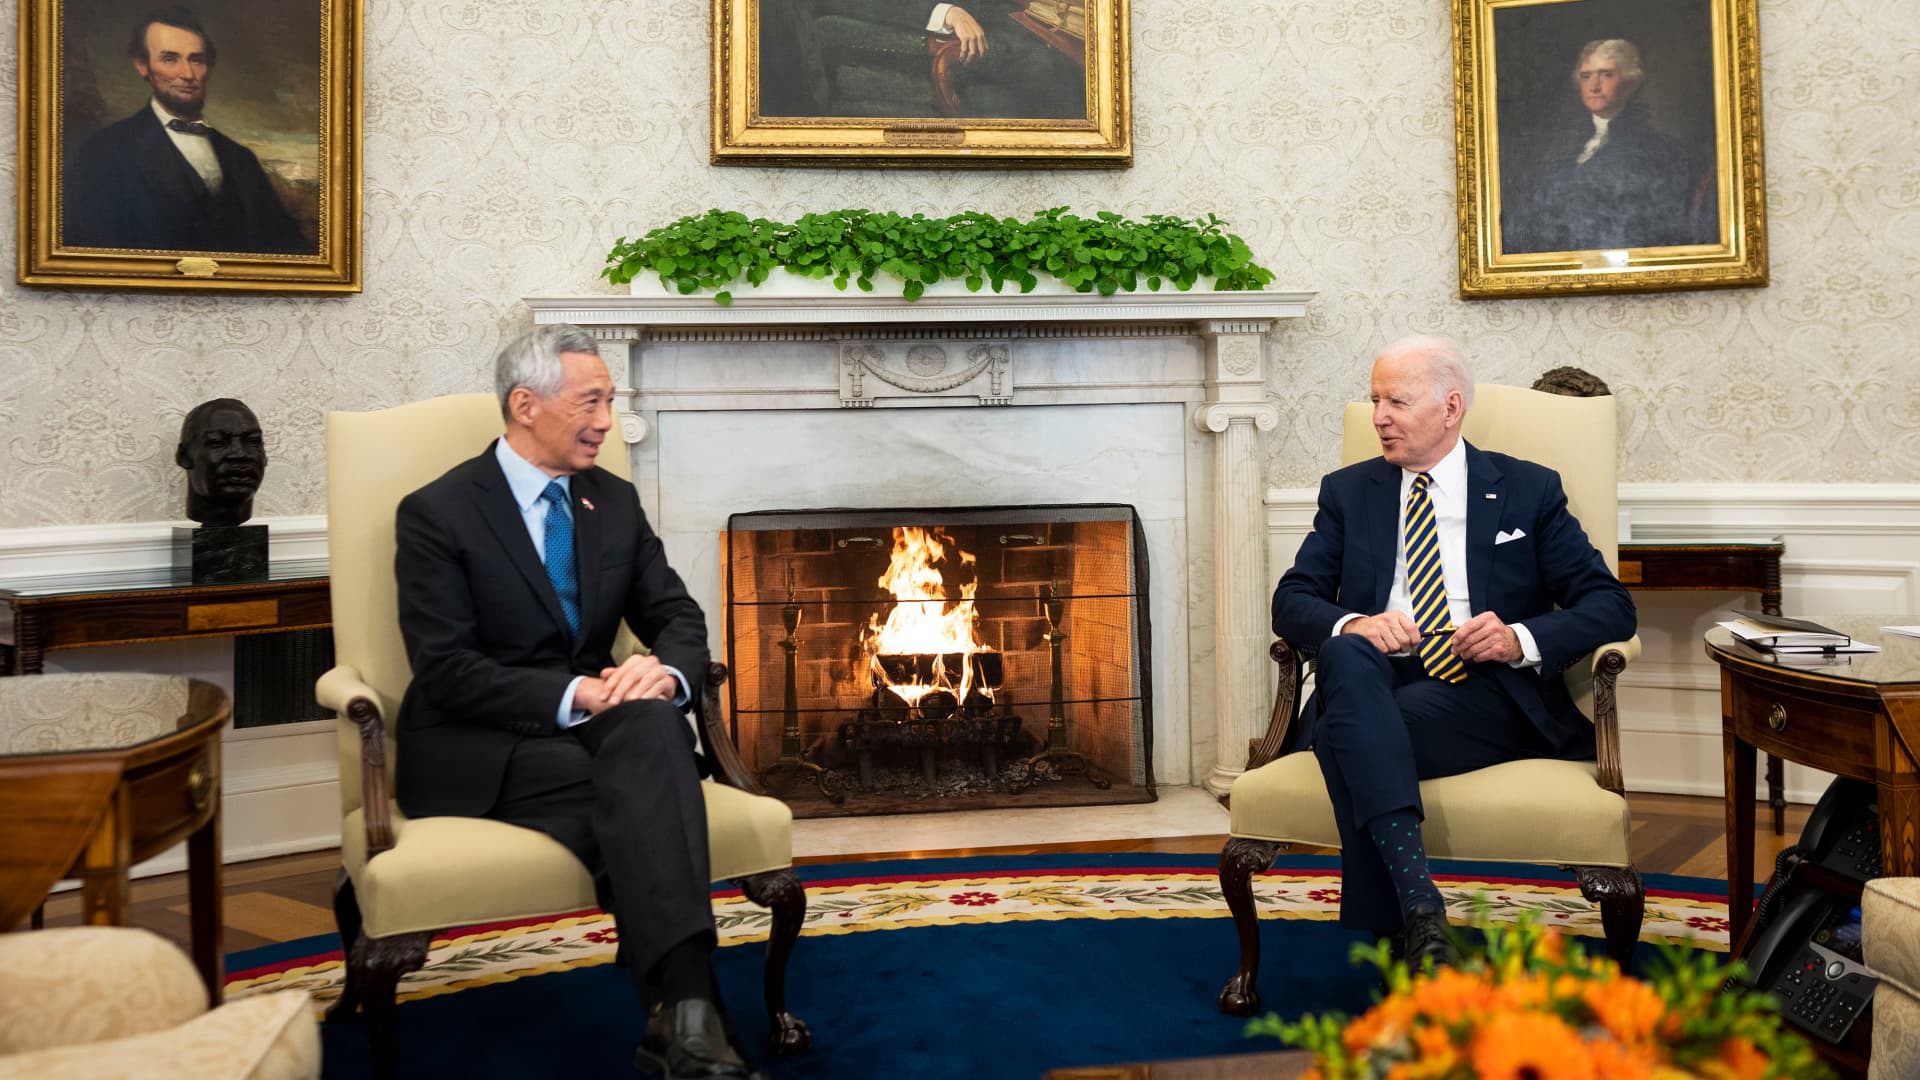 Full remarks of U.S. President Joe Biden and Singapore Prime Minister Lee Hsien ..